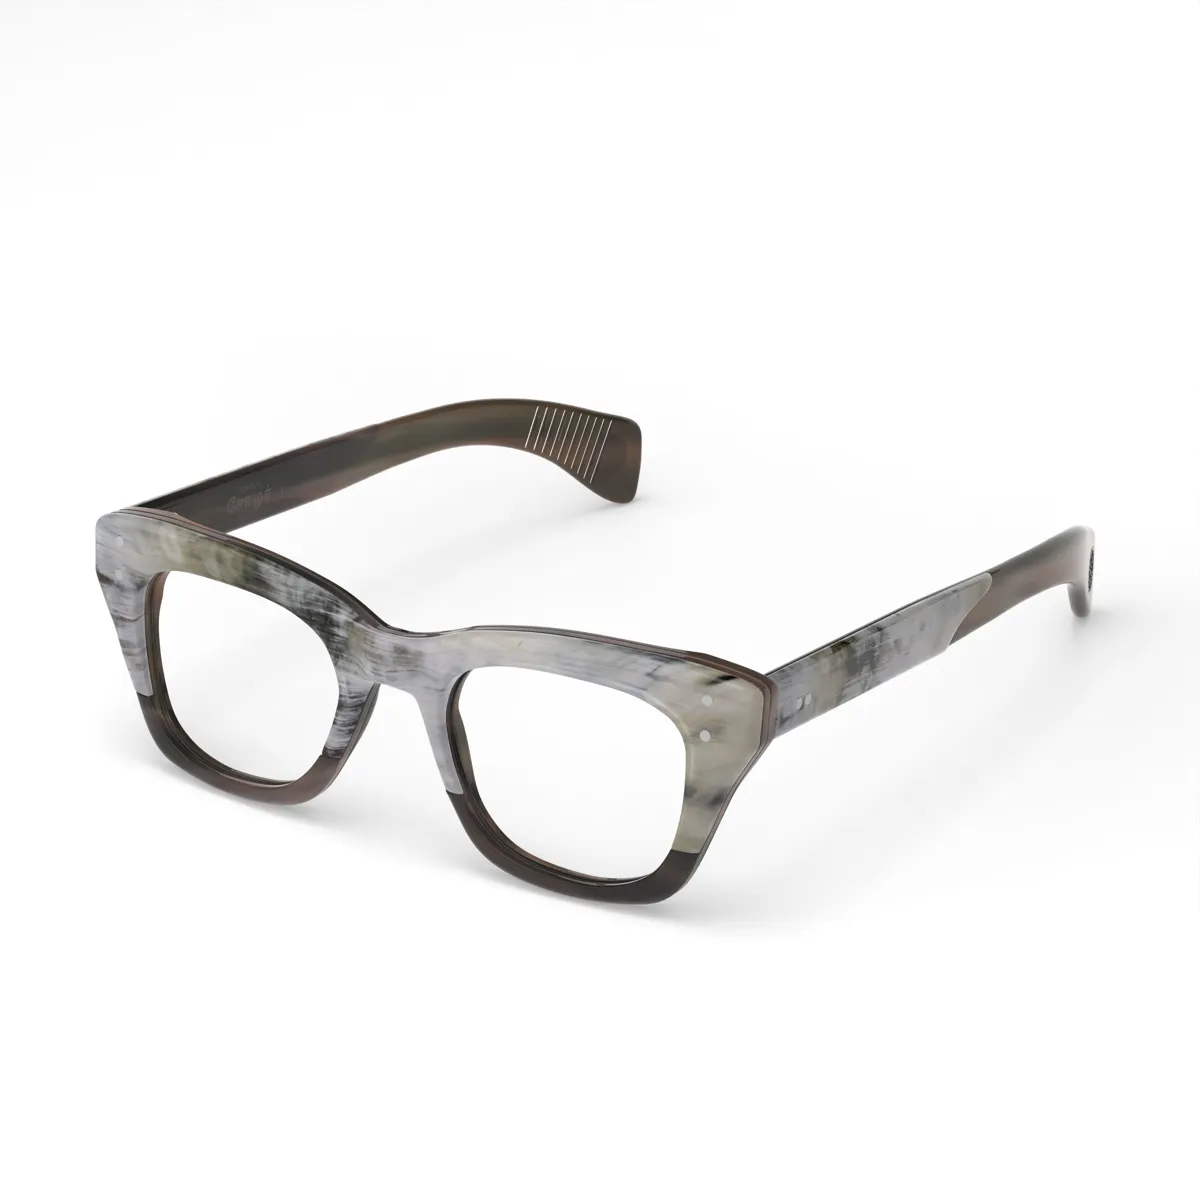 Chola 1 wayfarer eyewear frames